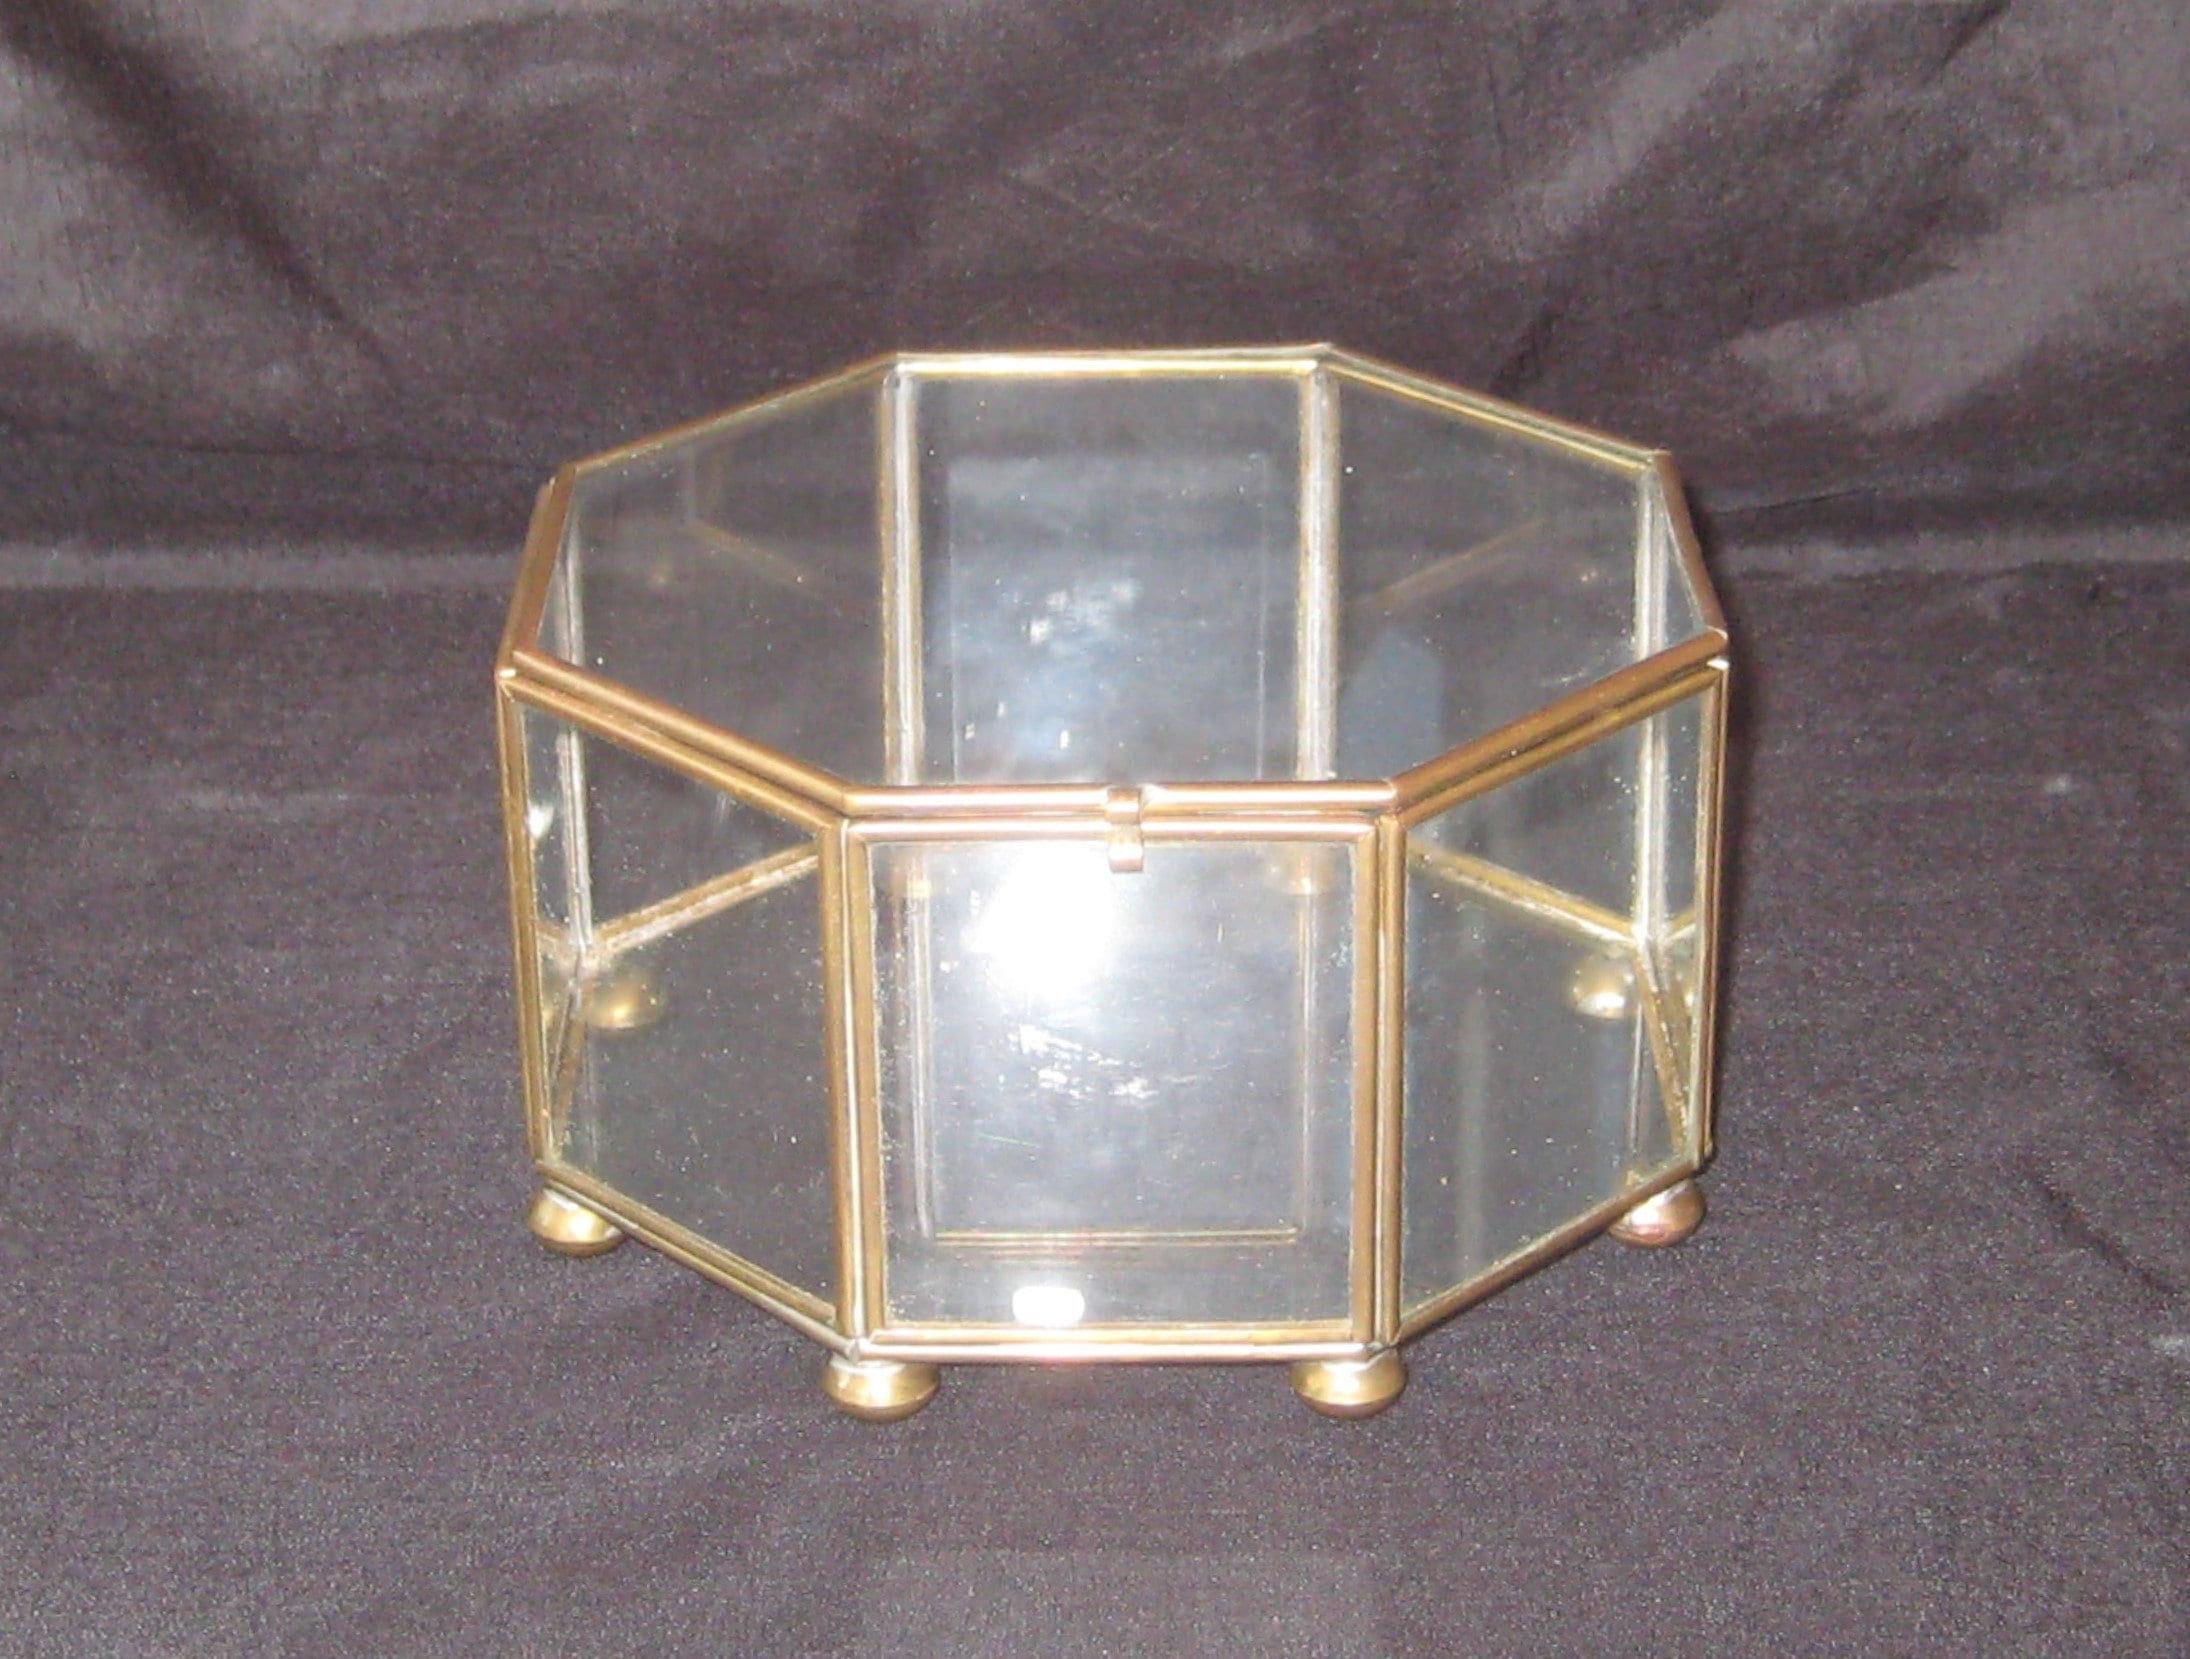 Iridescent Cosmetic Storage Box - Acrylic - 2 Sizes - ApolloBox